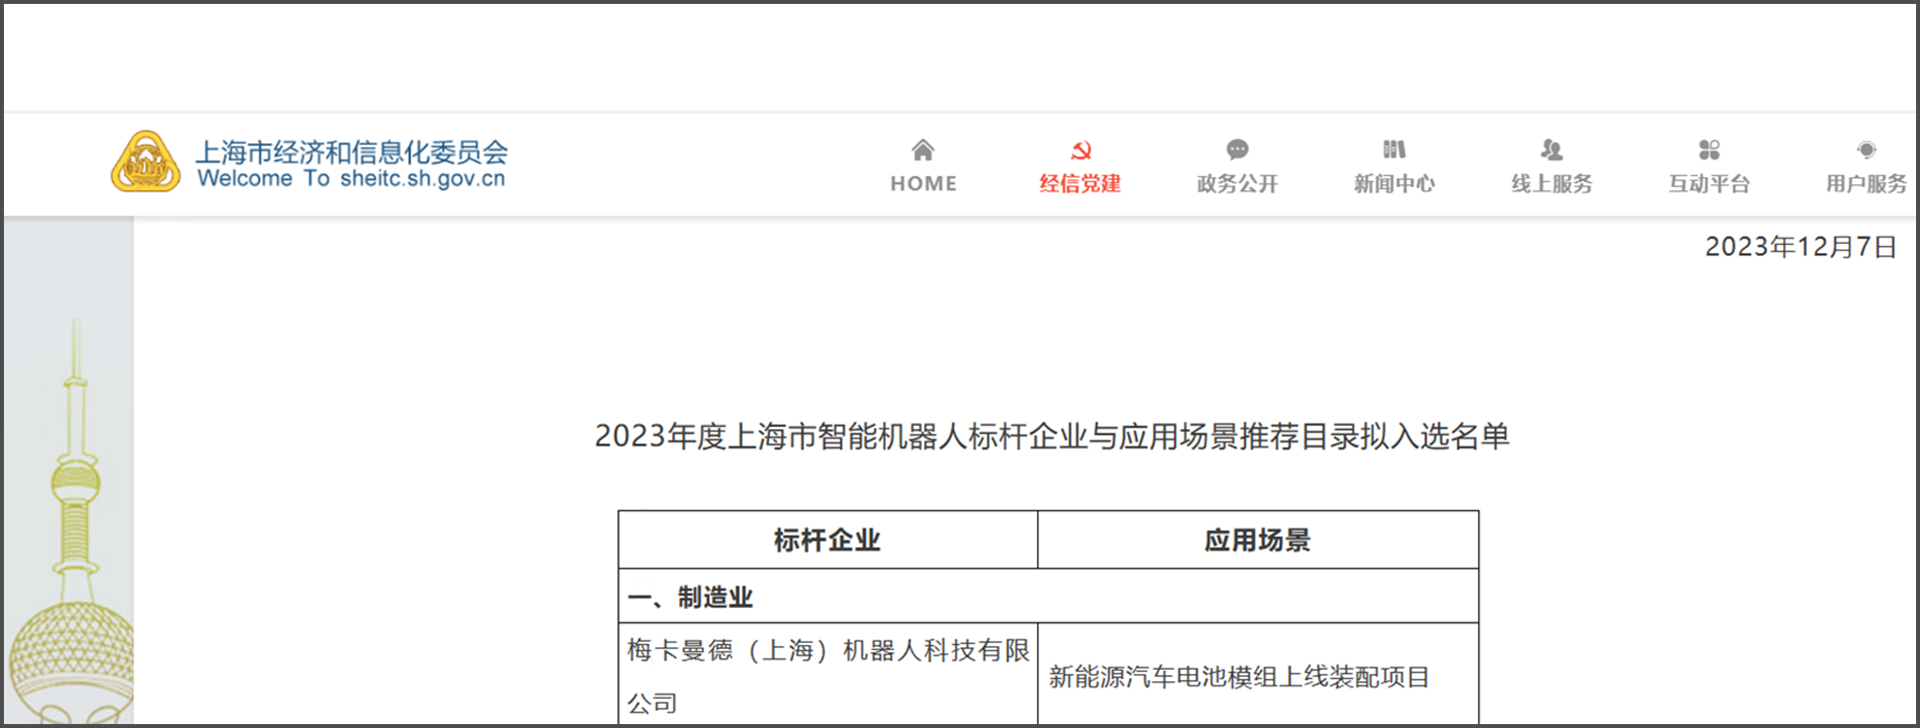 梅卡曼德再度入选《上海智能机器人标杆企业与应用场景推荐目录》